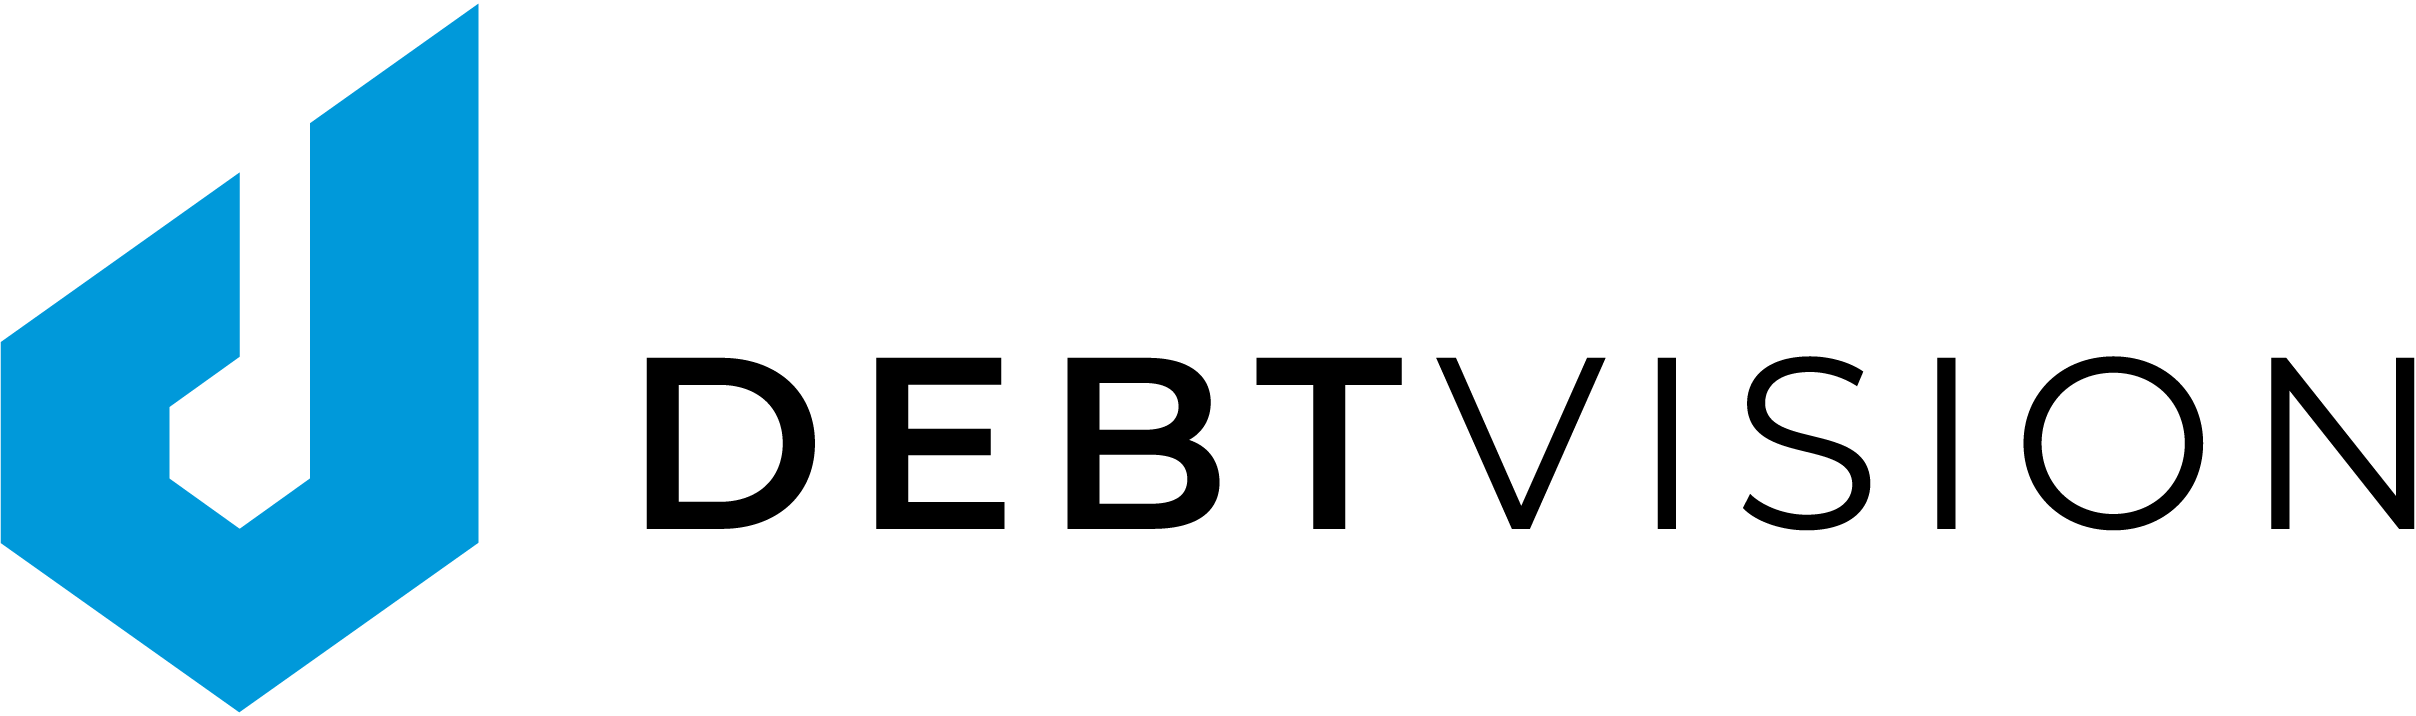 Logo Publsiher Württembergische Lebensversicherung is the first investor to digitally subscribe public-sector Schuldschein